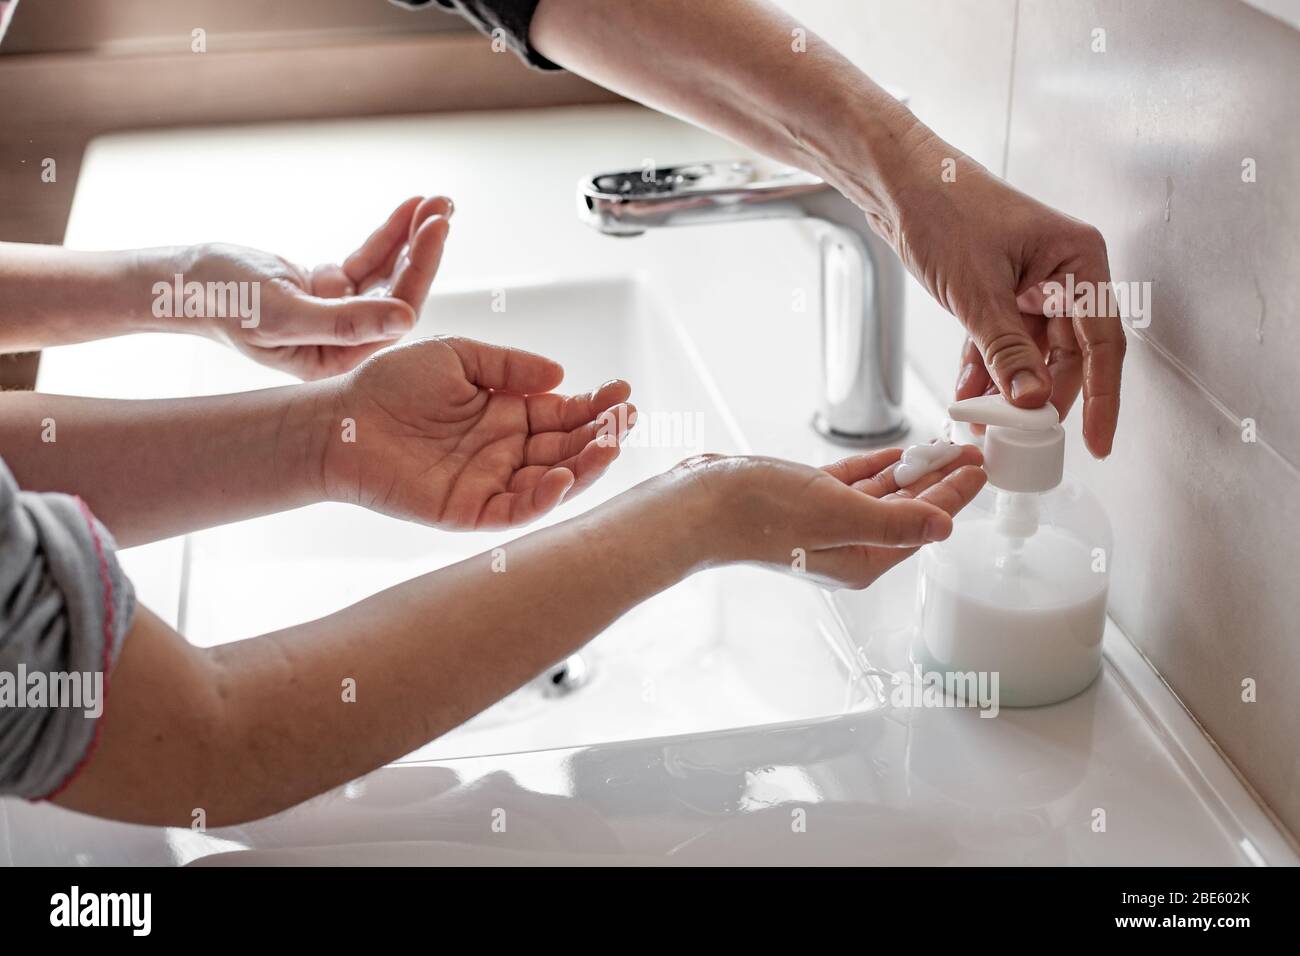 Madre che insegnava a sua figlia come lavare correttamente le loro mani con sapone per prevenire l'infezione da coronavirus Foto Stock